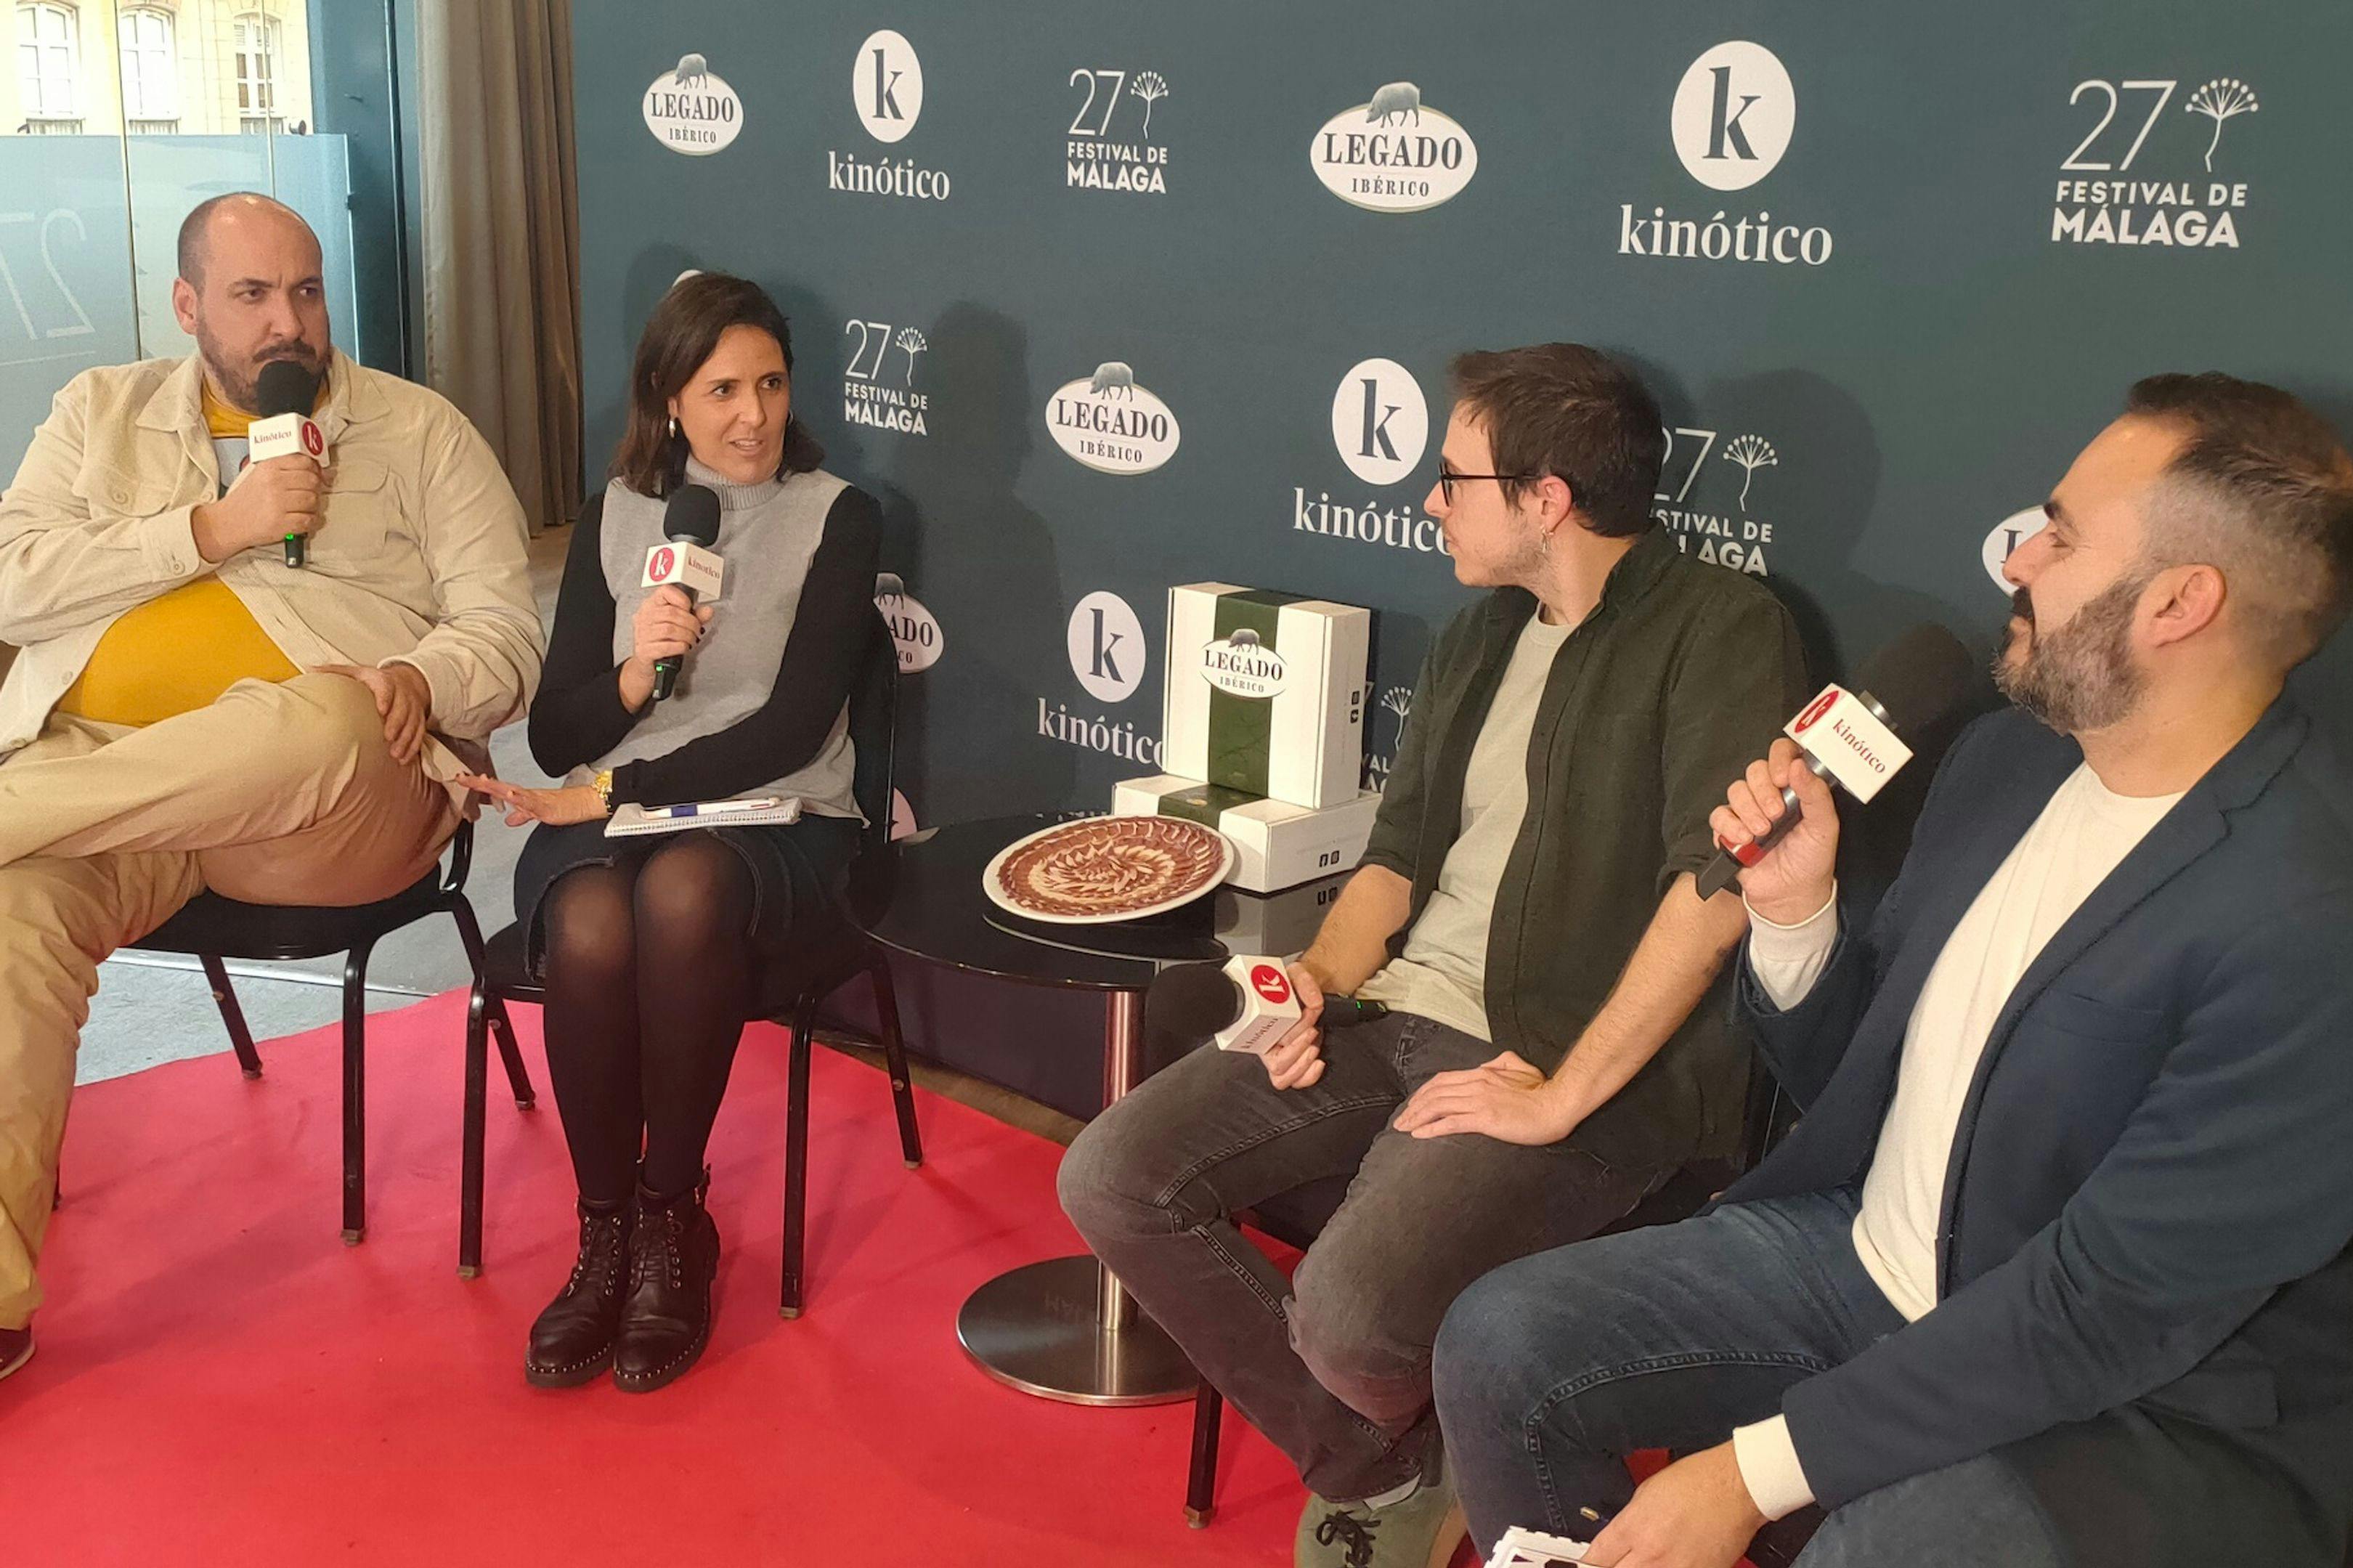 Dani Mantilla, Isabel Sánchez, Francesc Miró y David Martos, en el set de Kinótico del Festival de Málaga 2024